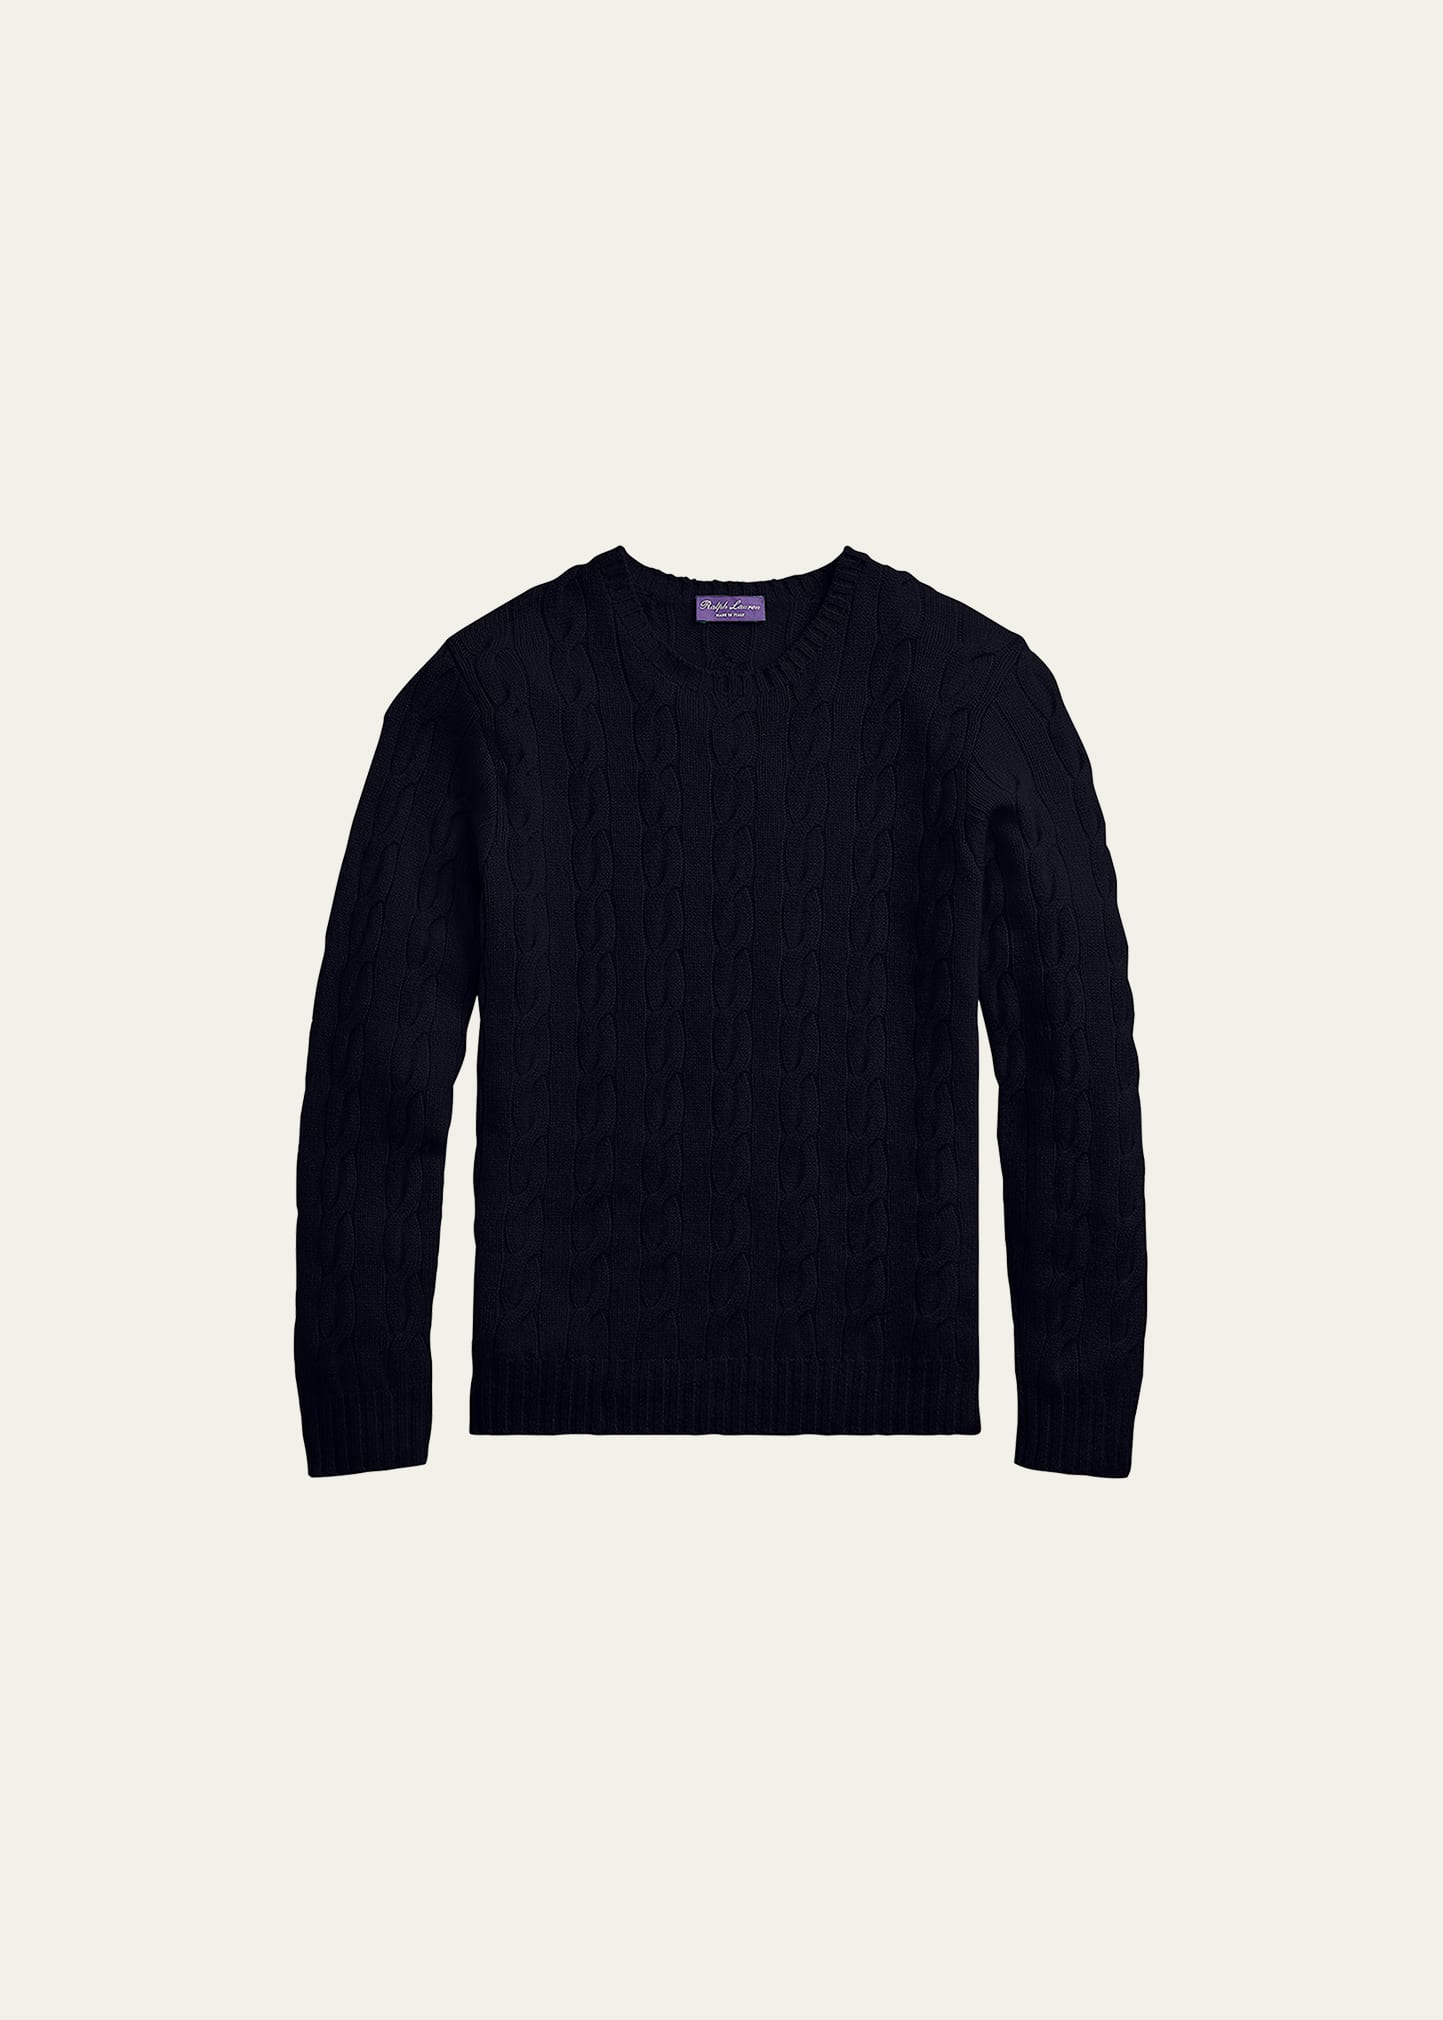 Ralph Lauren Purple Label Cashmere Cable-knit Crewneck Sweater, Navy